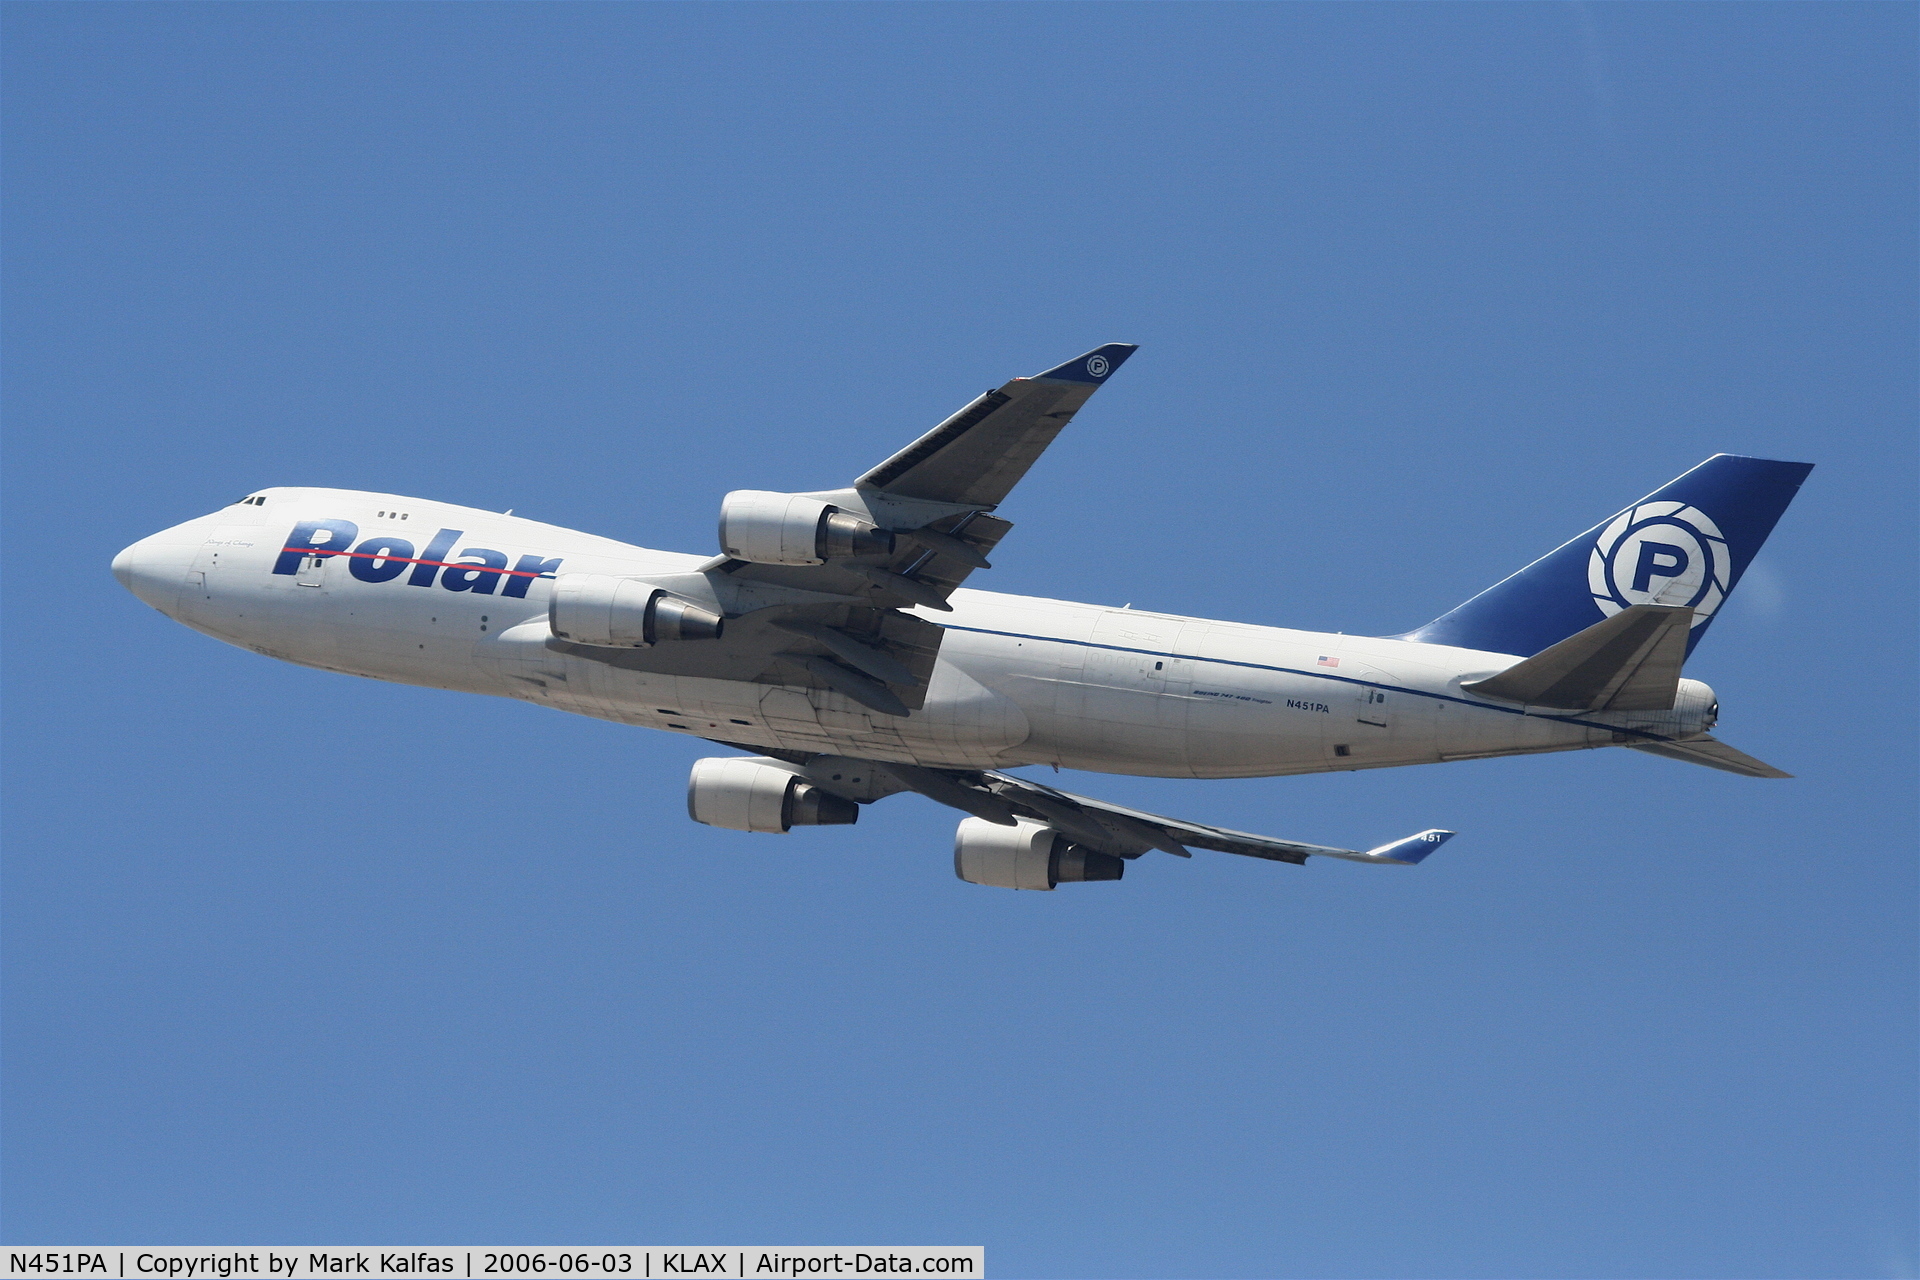 N451PA, 2000 Boeing 747-46NF C/N 30809, Polar Boeing 747-46NF, N451PA departing 25L KLAX.